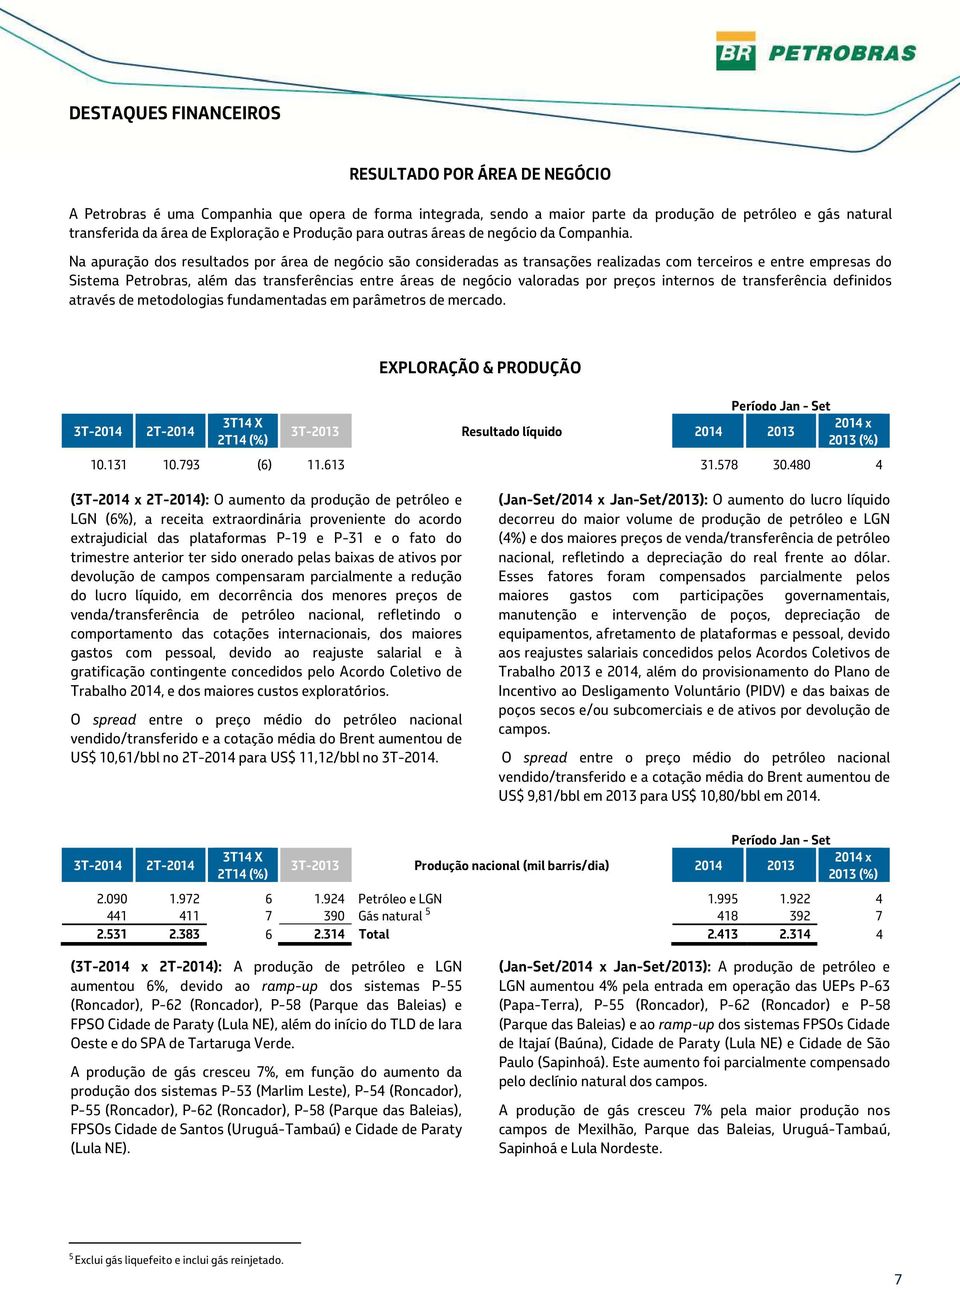 Na apuração dos resultados por área de negócio são consideradas as transações realizadas com terceiros e entre empresas do Sistema Petrobras, além das transferências entre áreas de negócio valoradas